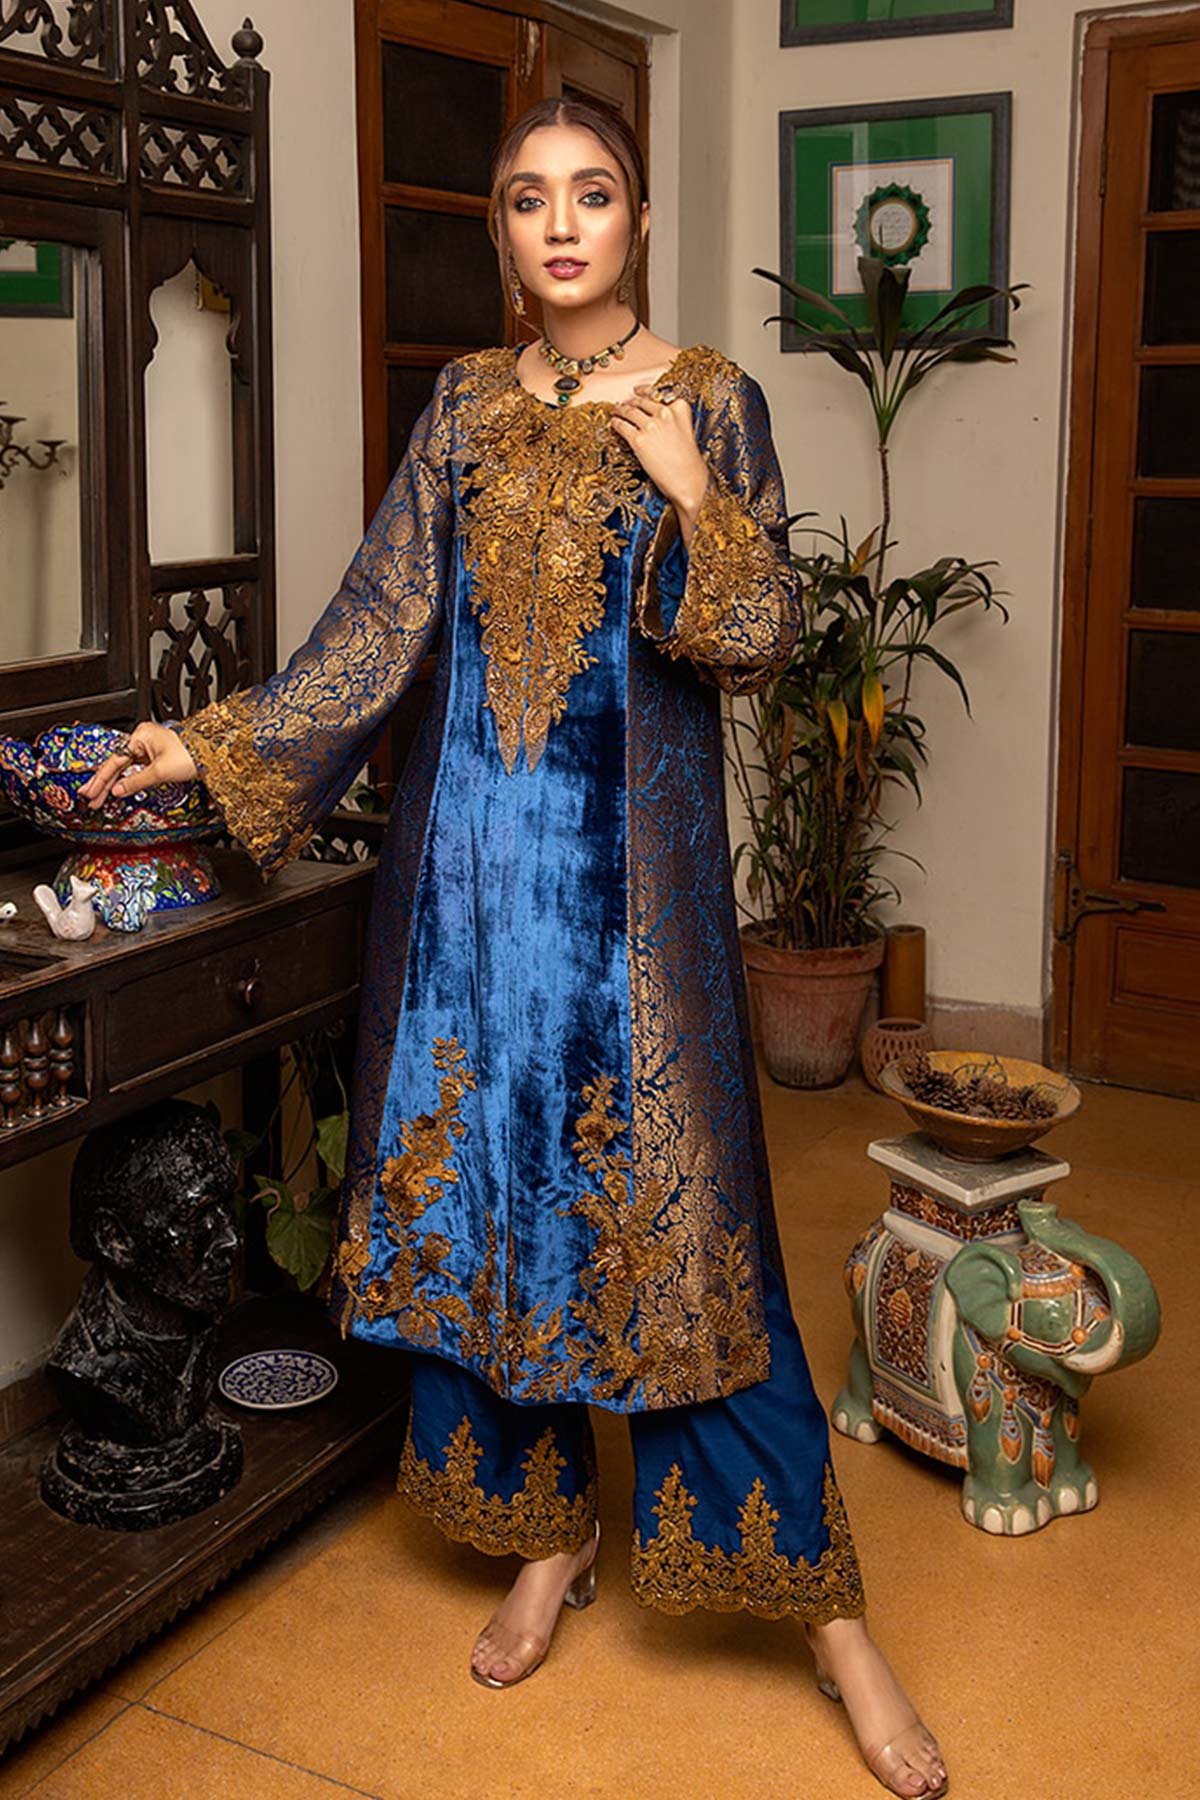 Sapphire Princess Shawl - Nilofer Shahid